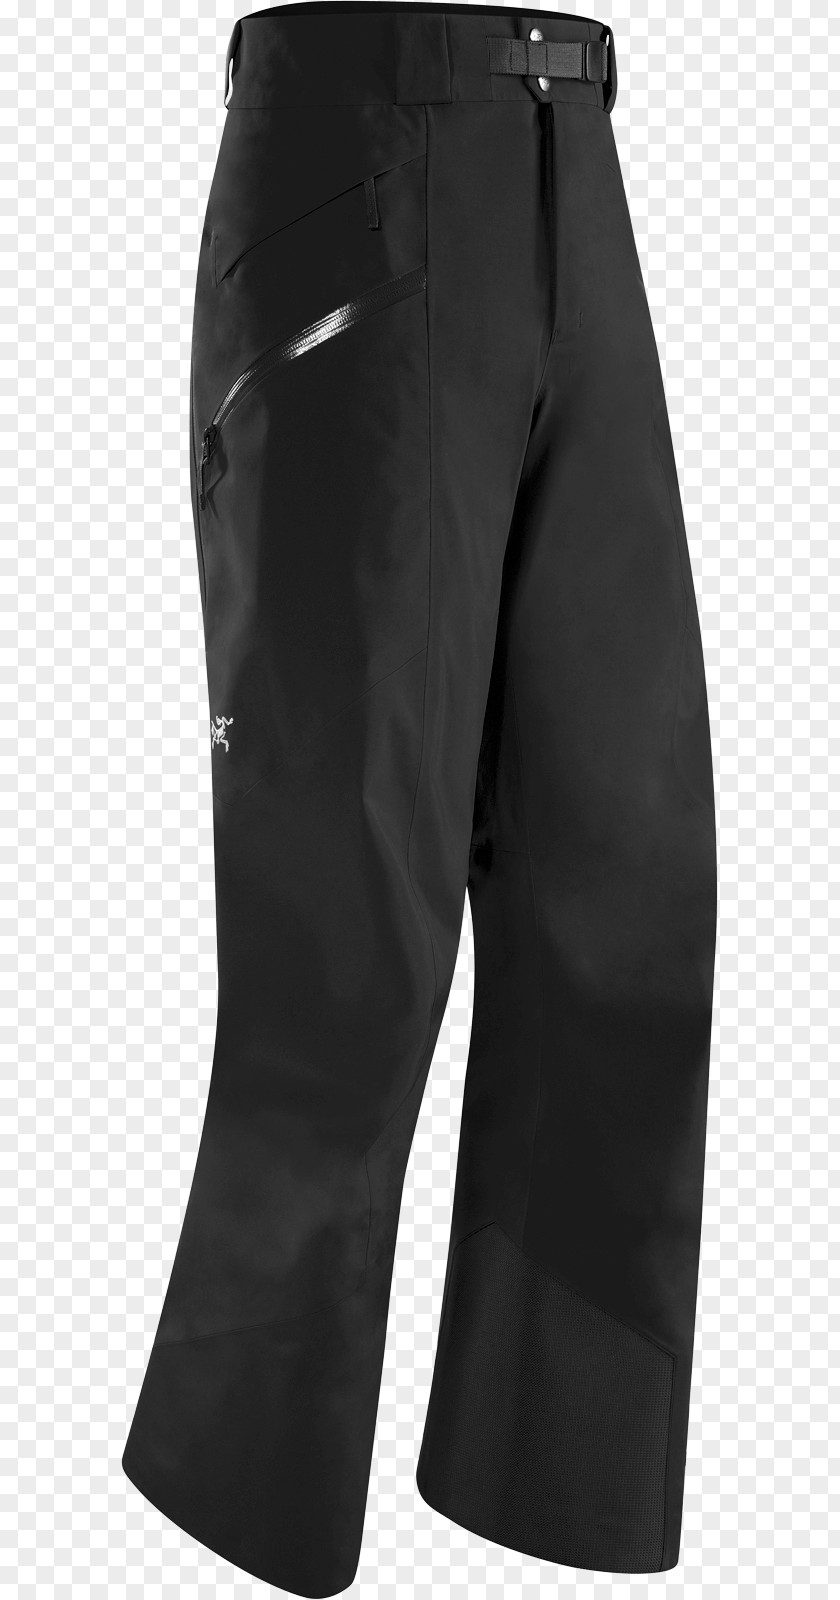 Pants Clothing Ski Suit Arc'teryx Salomon Group PNG